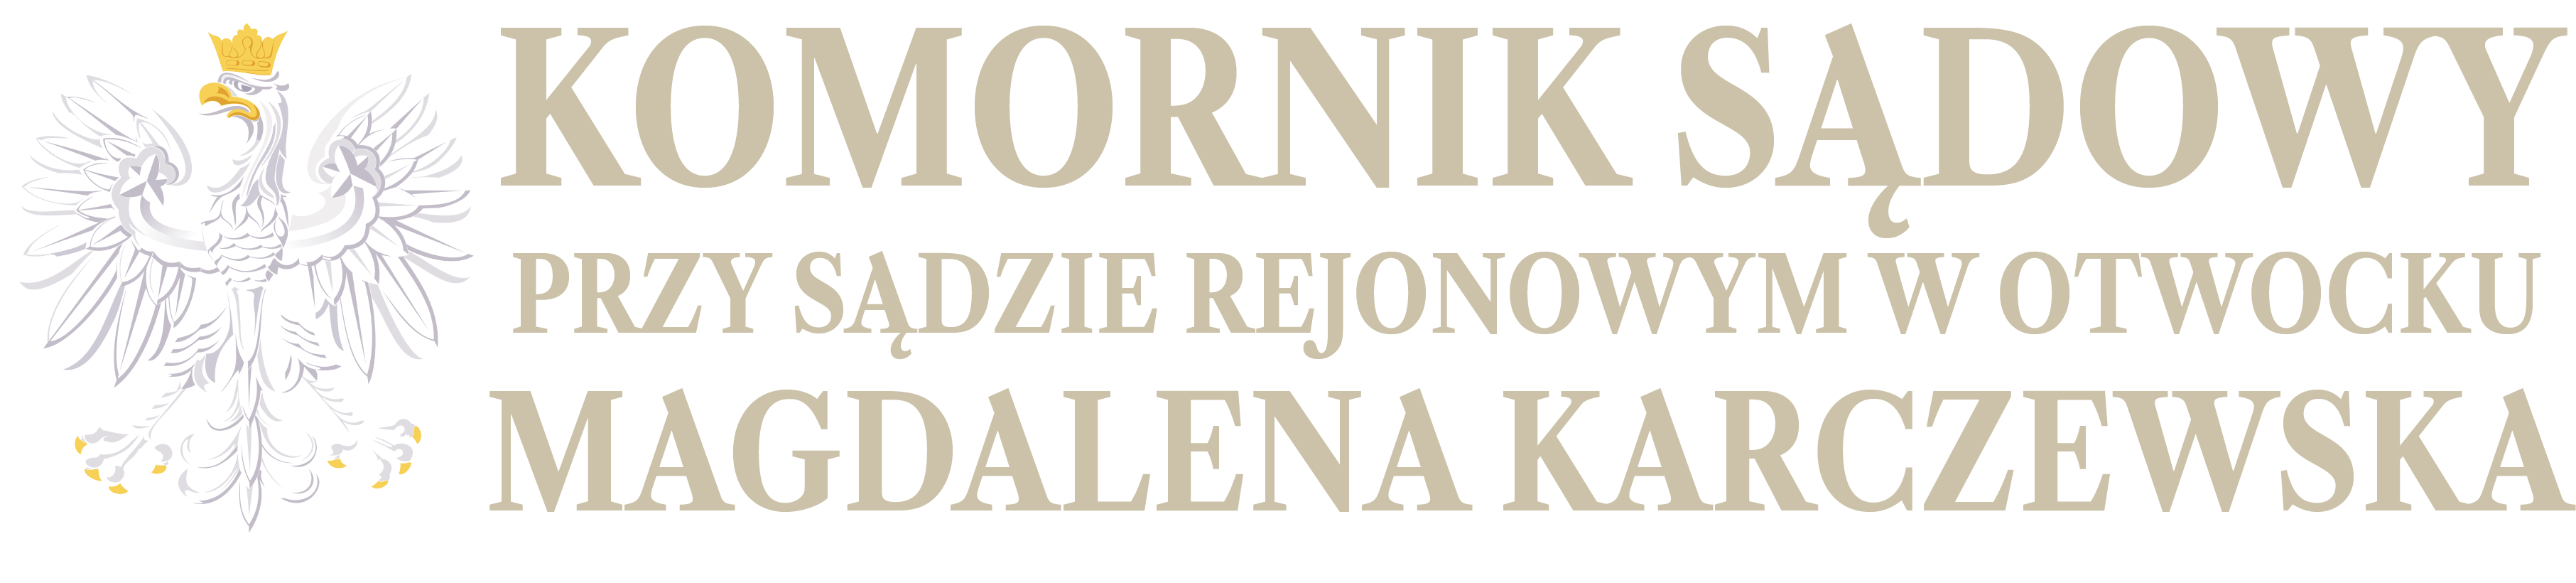 Komornik Sądowy przy Sądzie Rejonowym w Otwocku Magdalena Karczewska